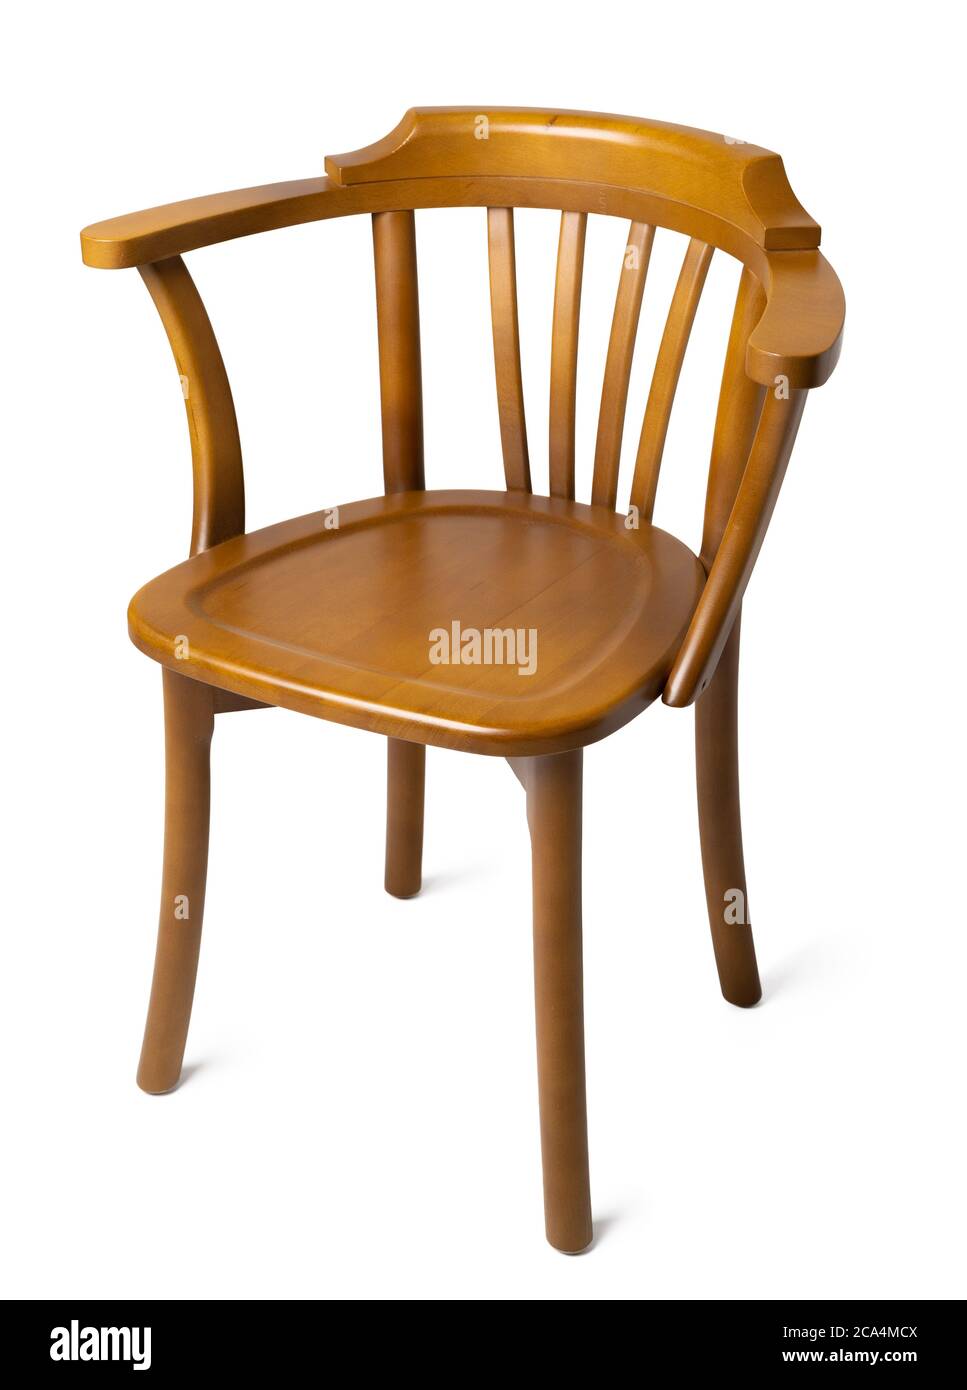 Altmodischer Vintage-Stuhl aus Holz isoliert auf weiß Stockfotografie -  Alamy